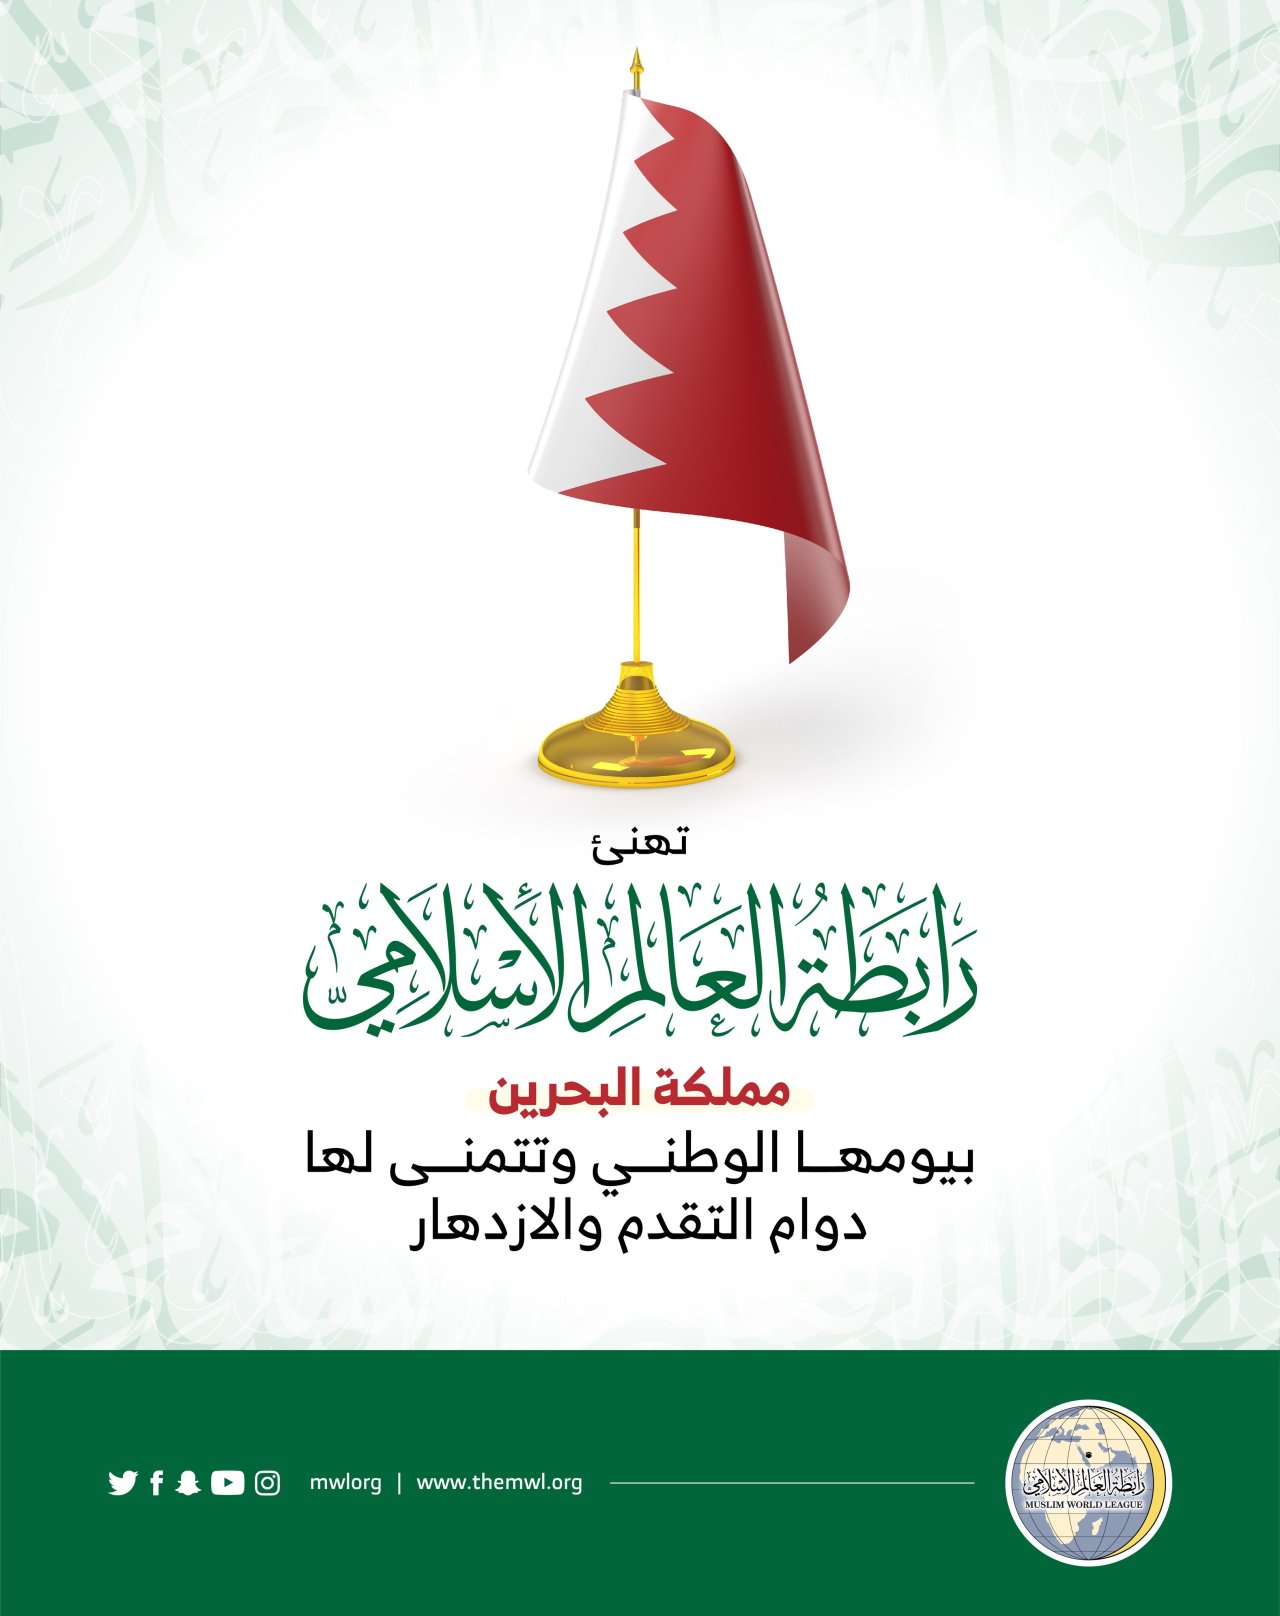 تهنئ رابطة العالم الإسلامي‬⁩ مملكة البحرين‬⁩ بذكرى يومها الوطني.